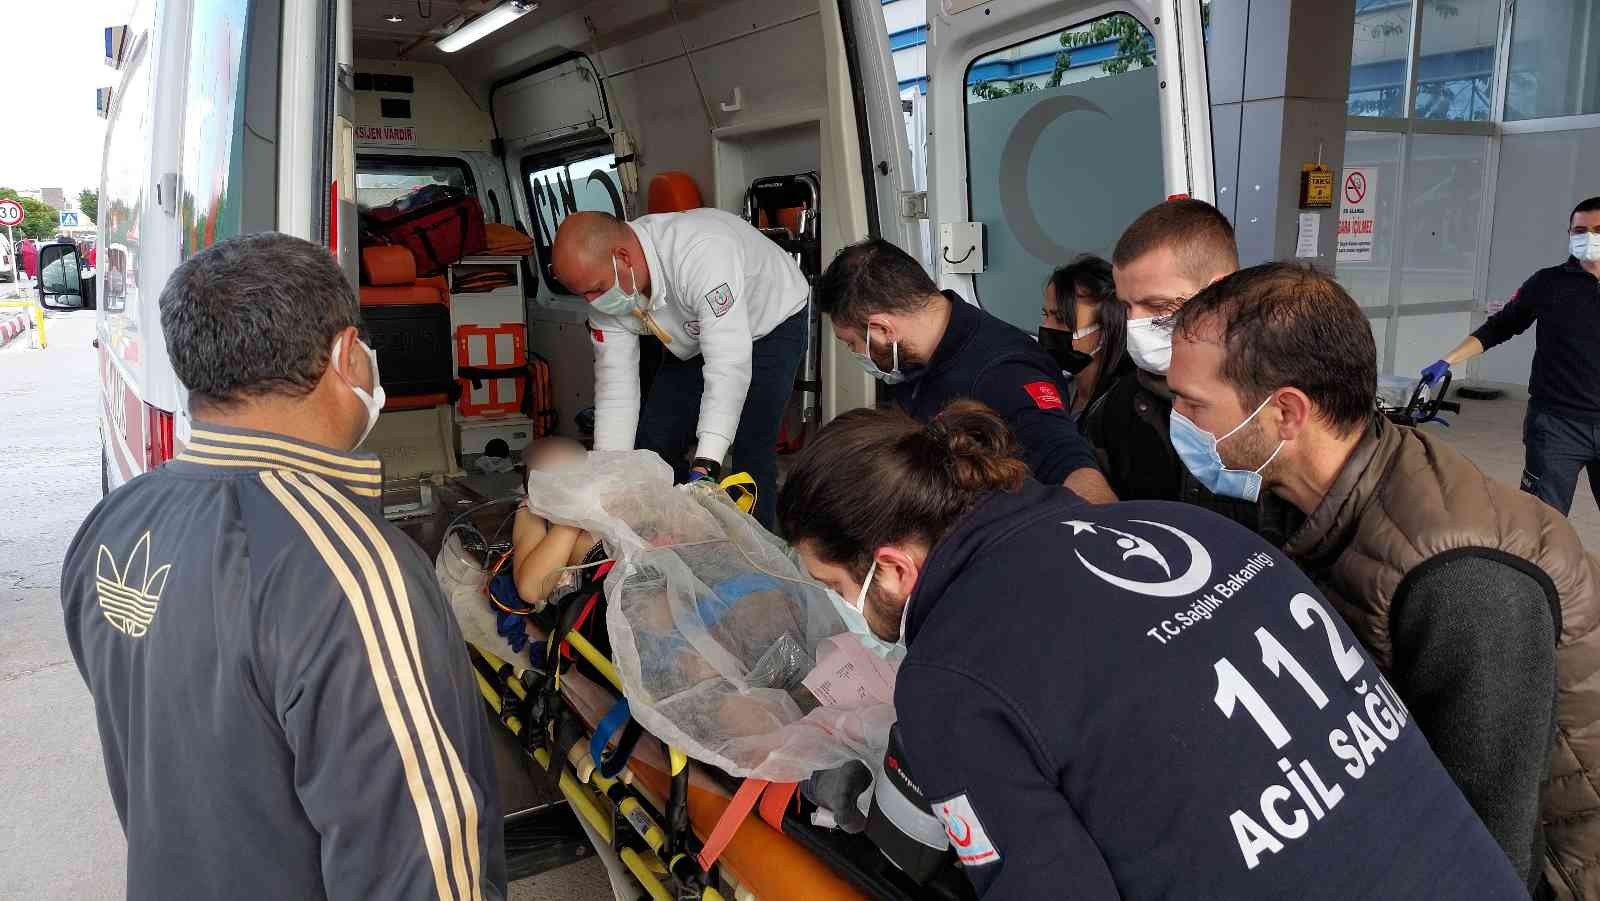 Eve balkondan girmek isteyince 2. kattan düşen çocuk yaralandı #samsun